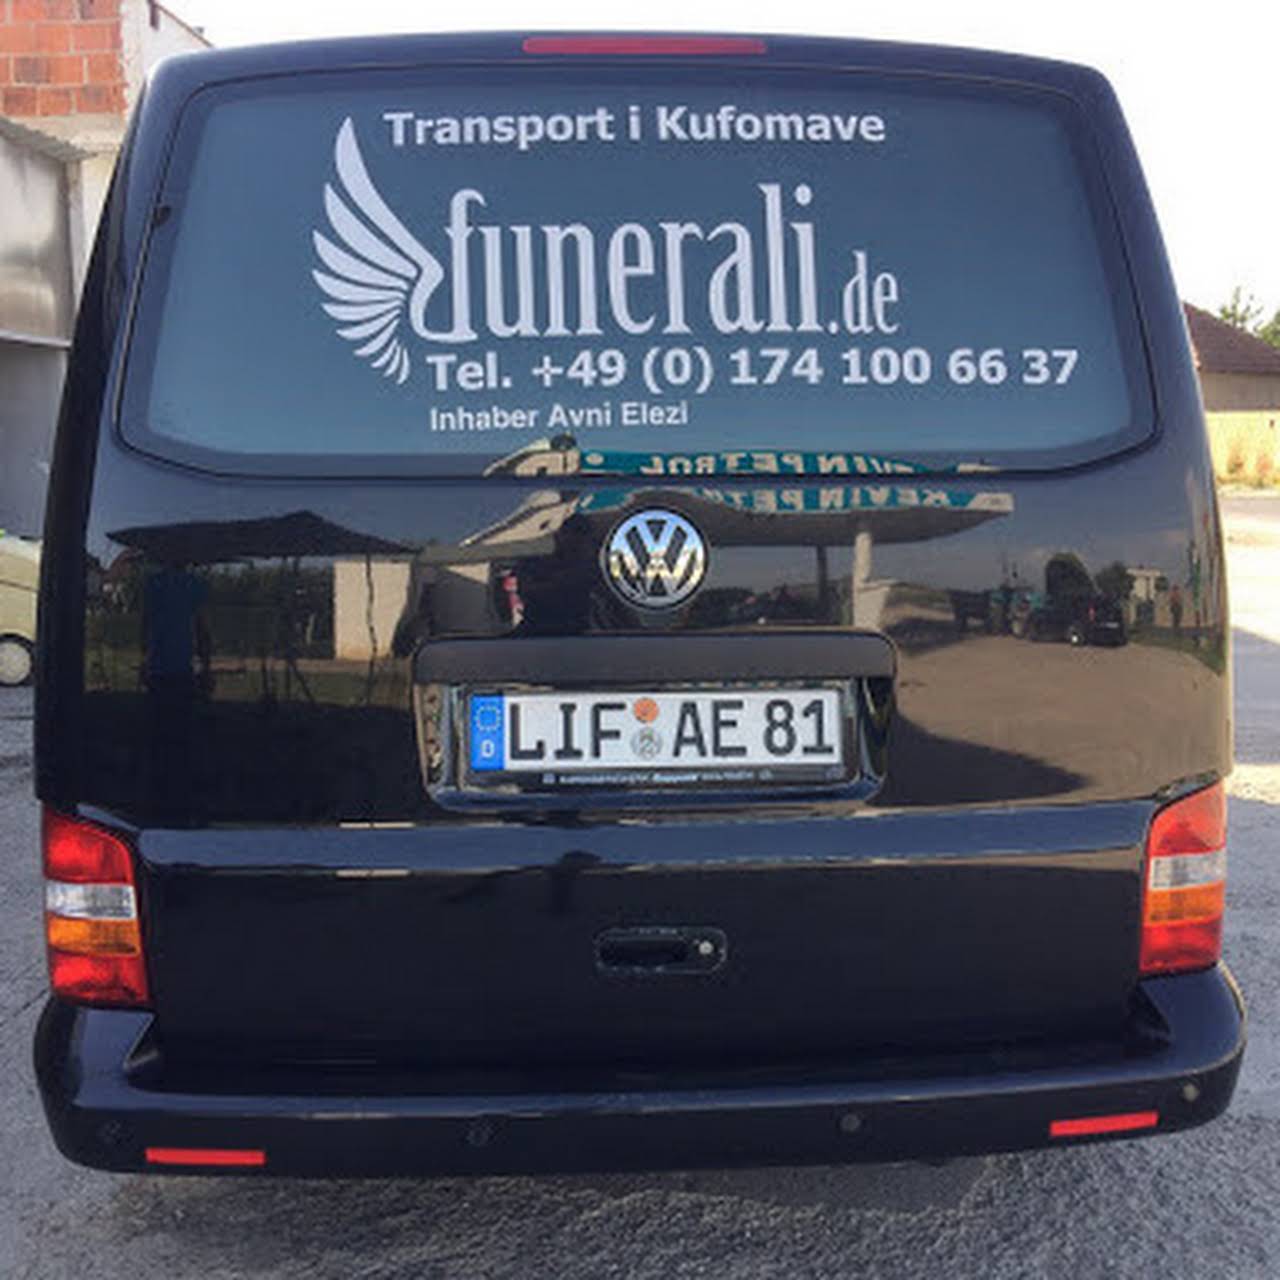 Transport Kufomash Funerali GmbH %%sep%% Transport Kufomash nga Gjermania, Zvicra, Austria, Franca, Belgjika, Norvegjia, Holanda